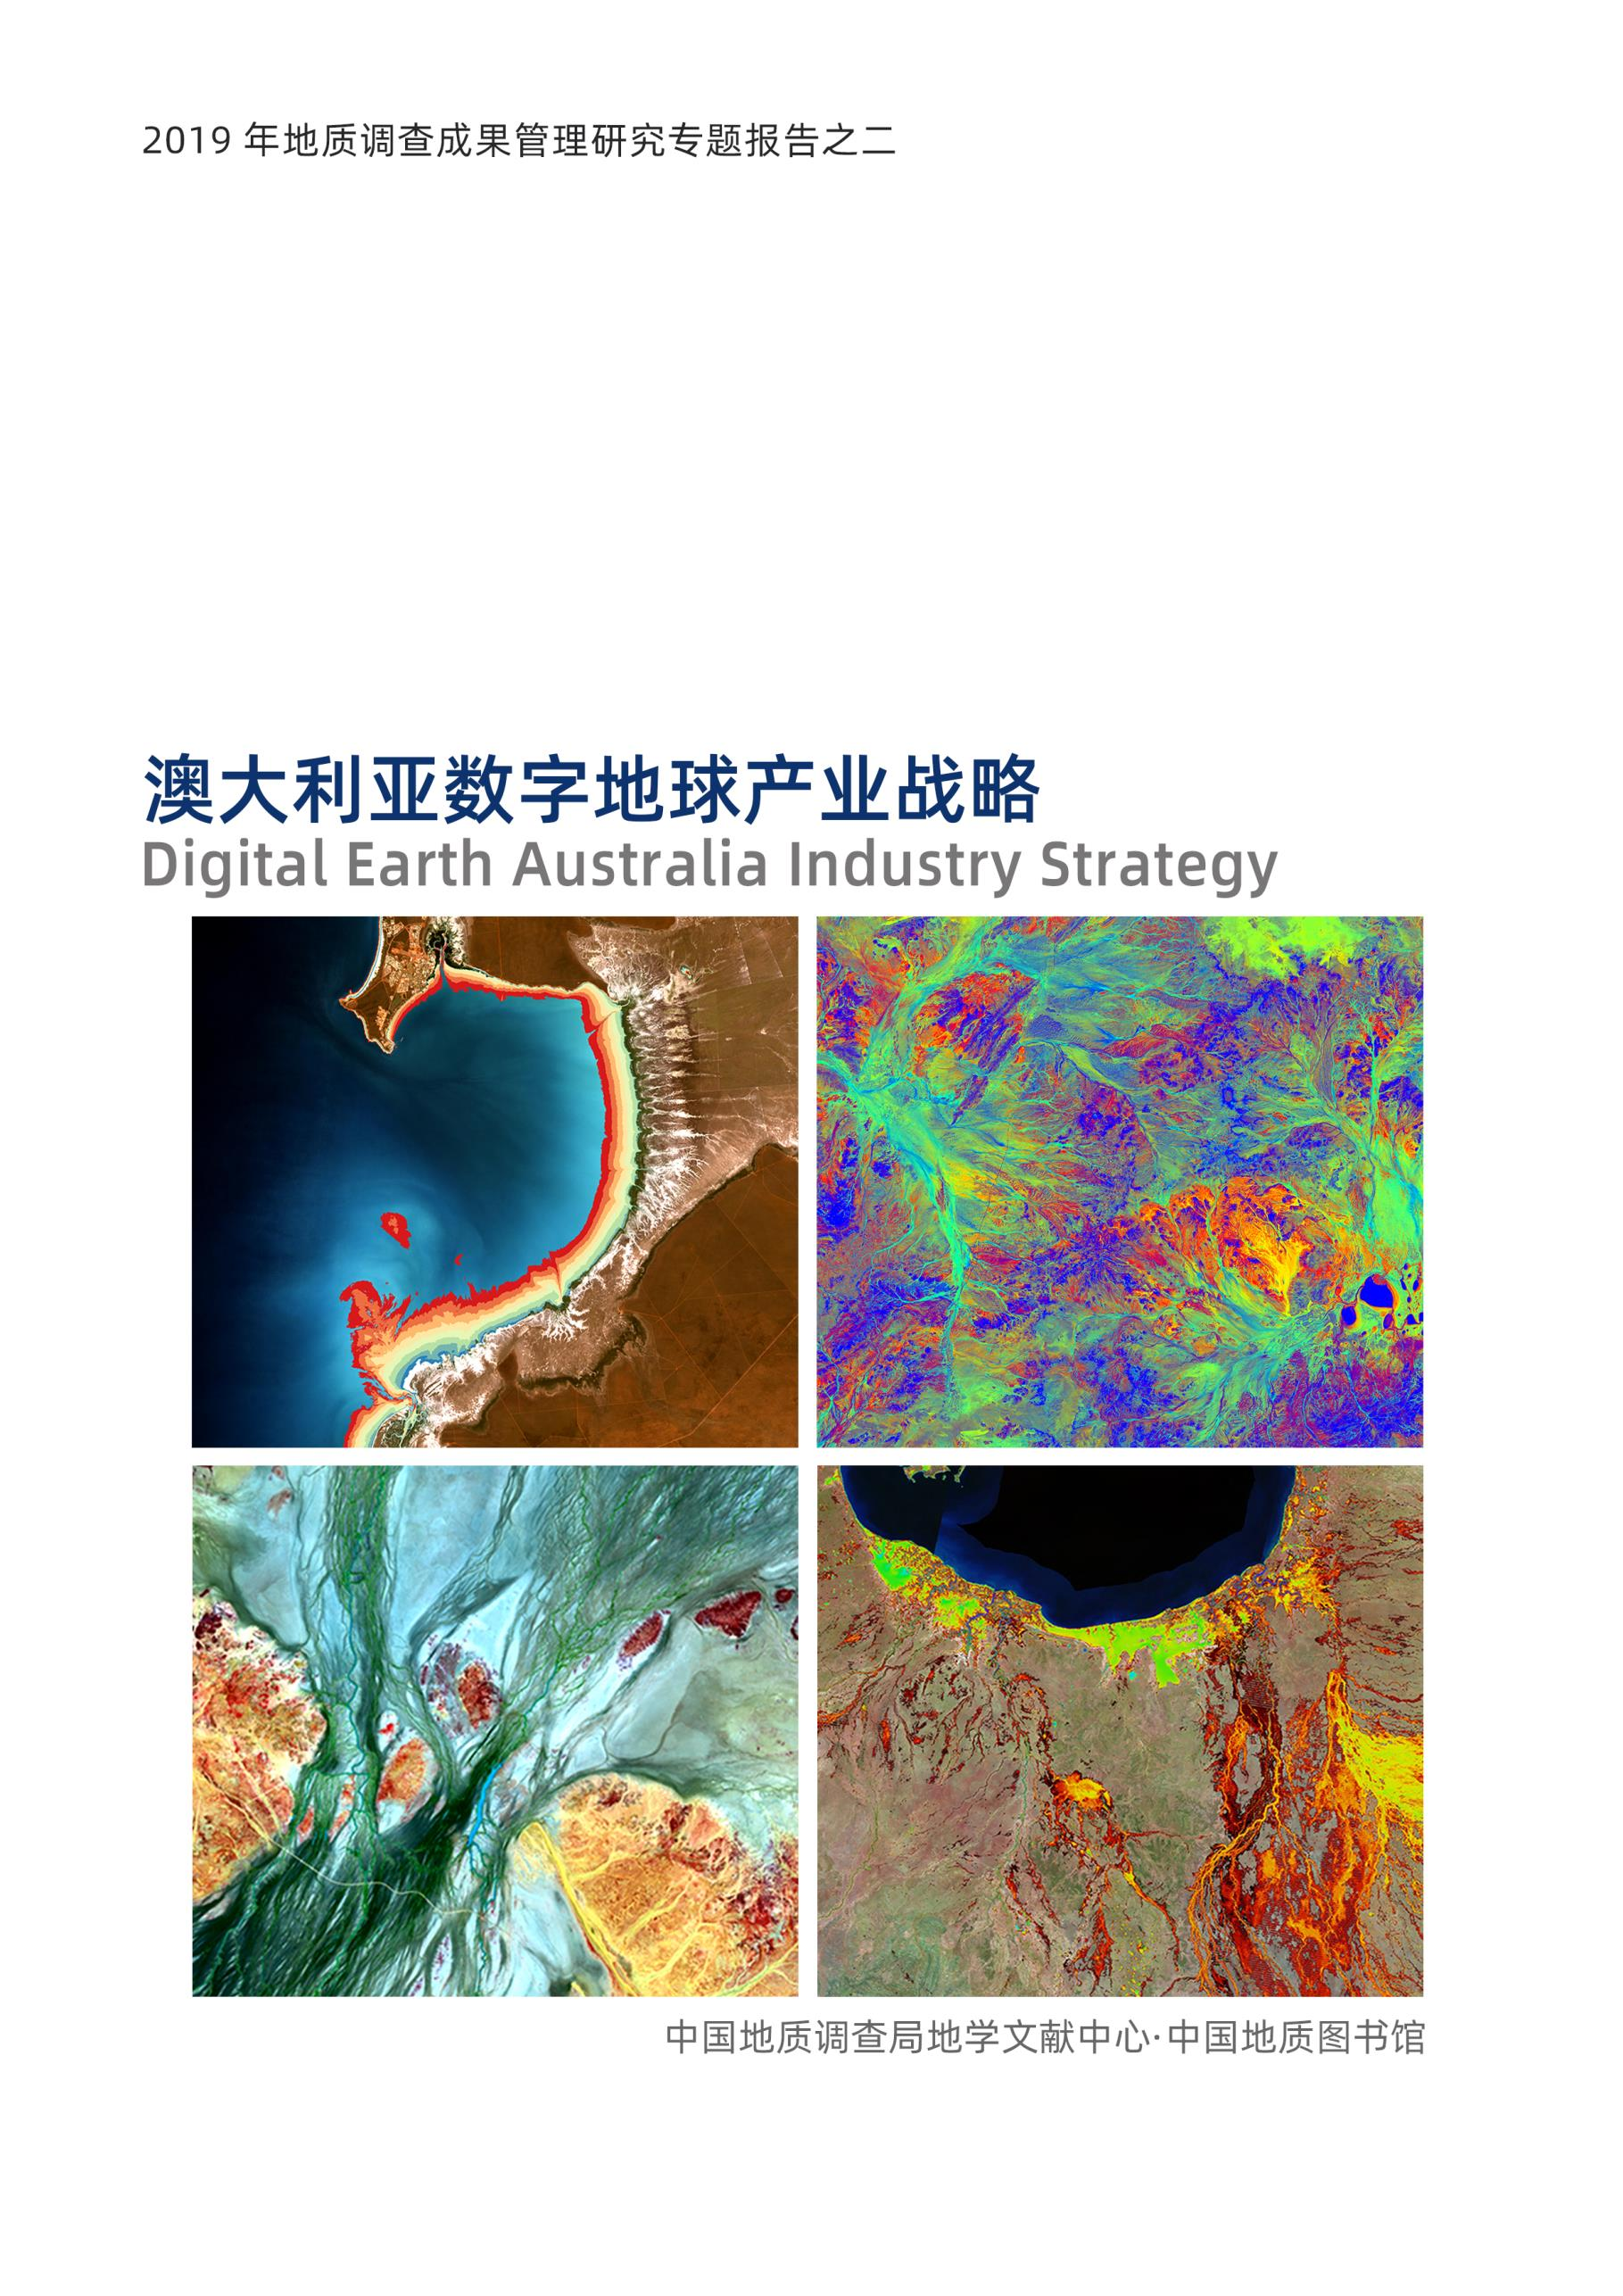 澳大利亚数字地球产业战略